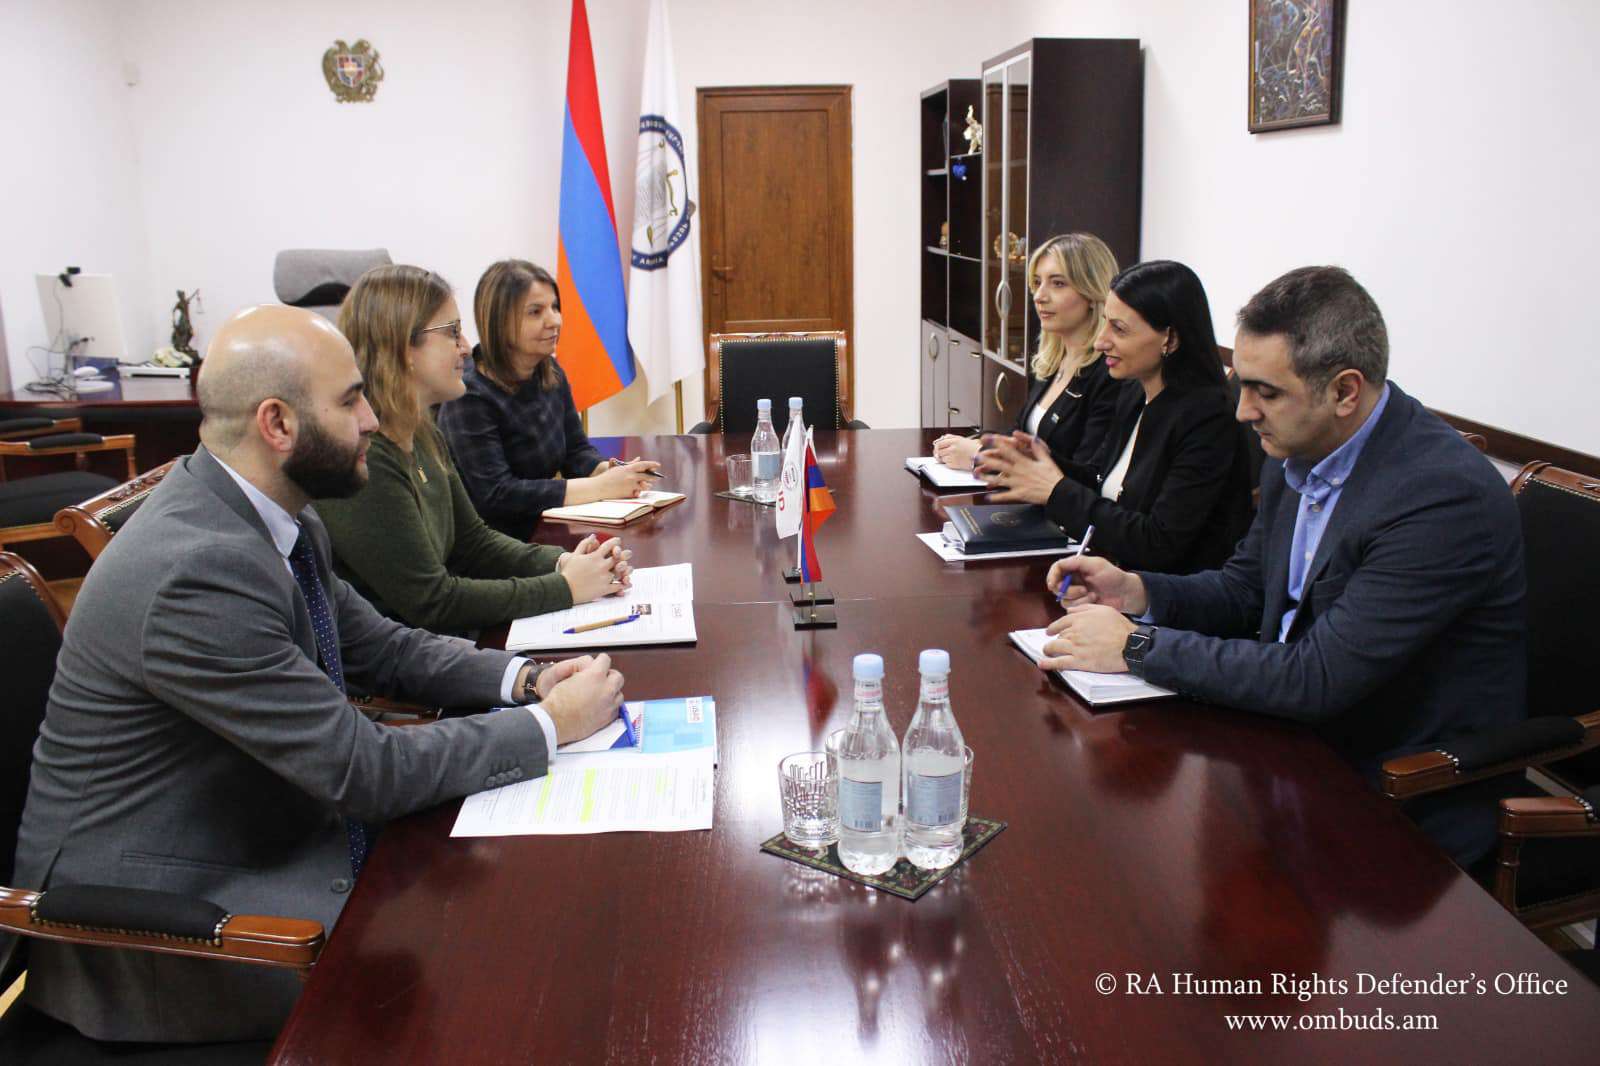 ABD Kalkınma Ajansı tarafından Ermenistan’da uygulanan programlar takdir edildi